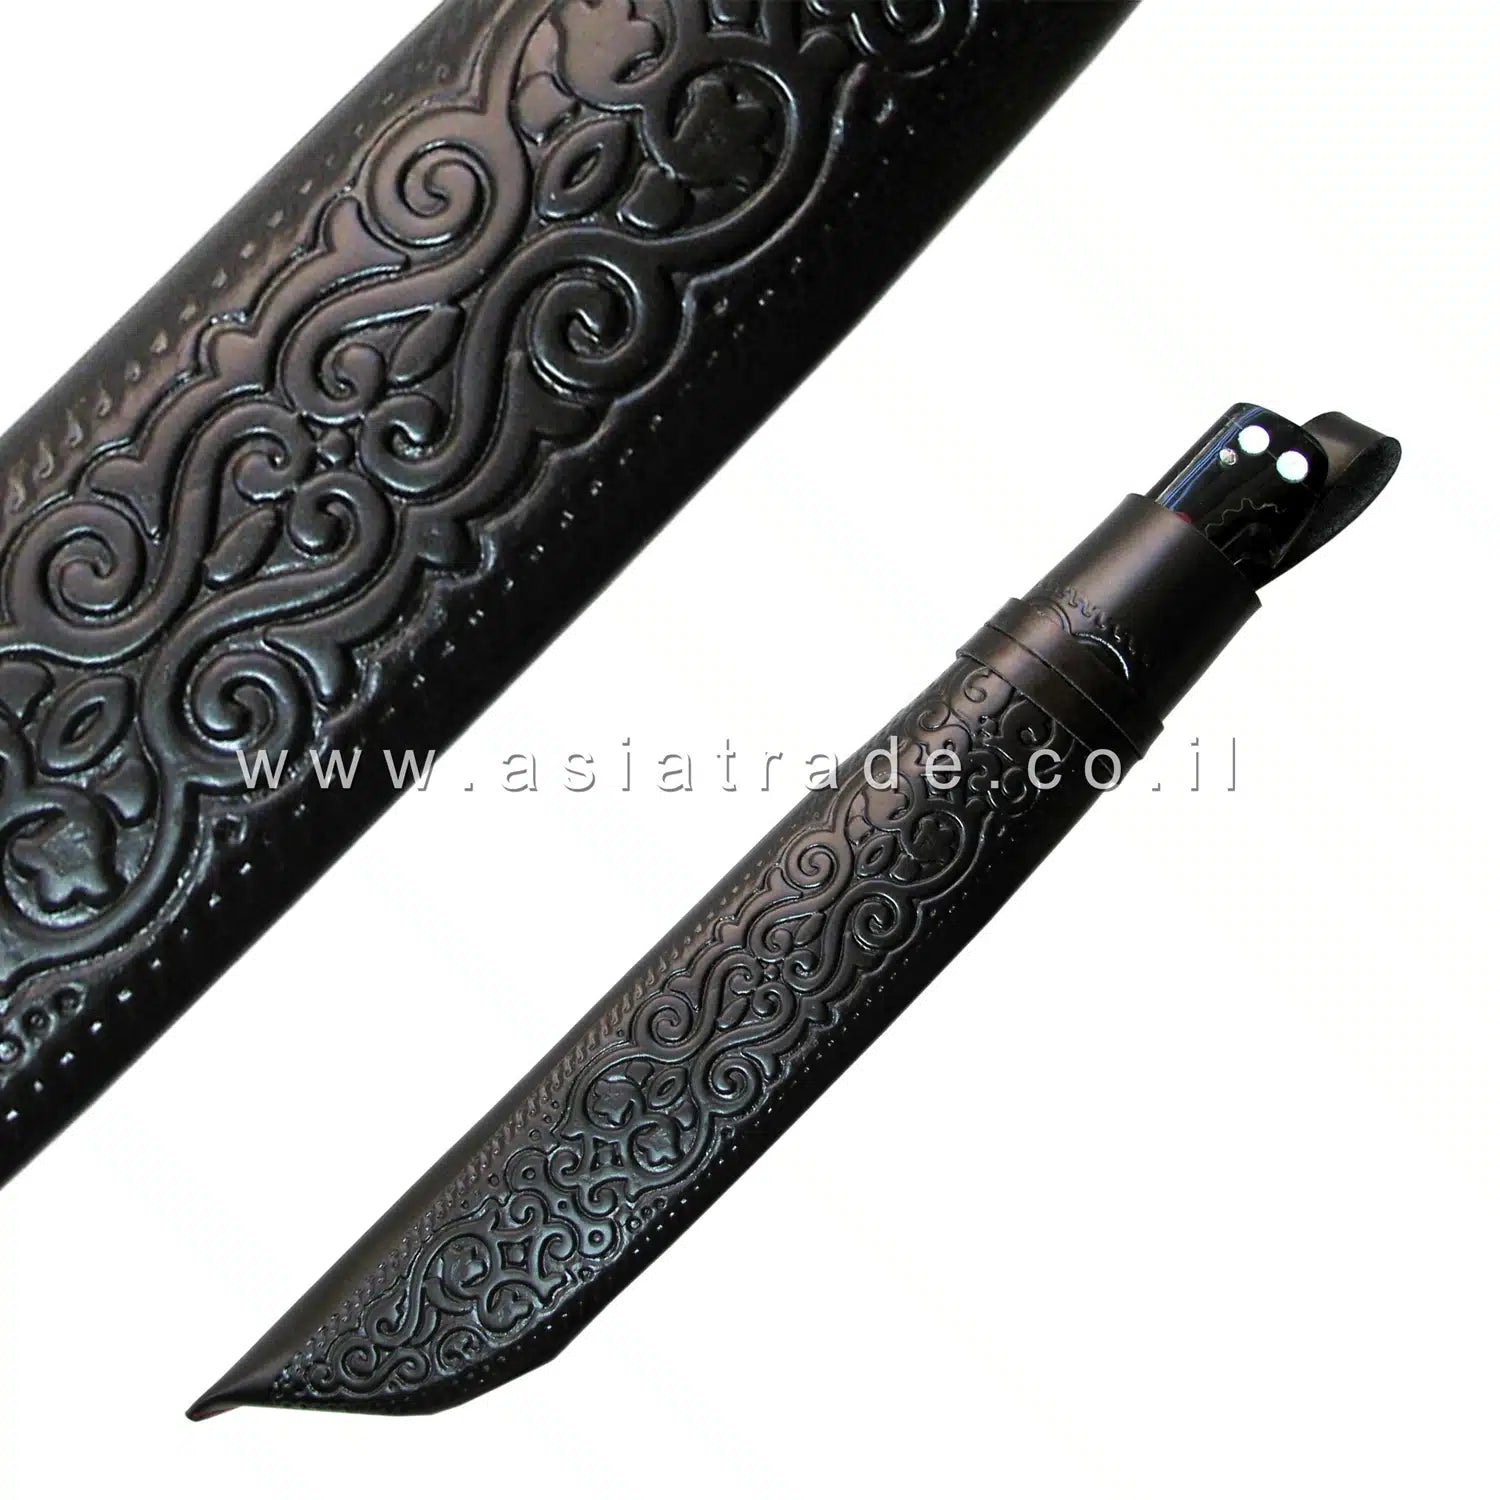 Узбекский нож ручной работы, Пчак - CHUST 1116